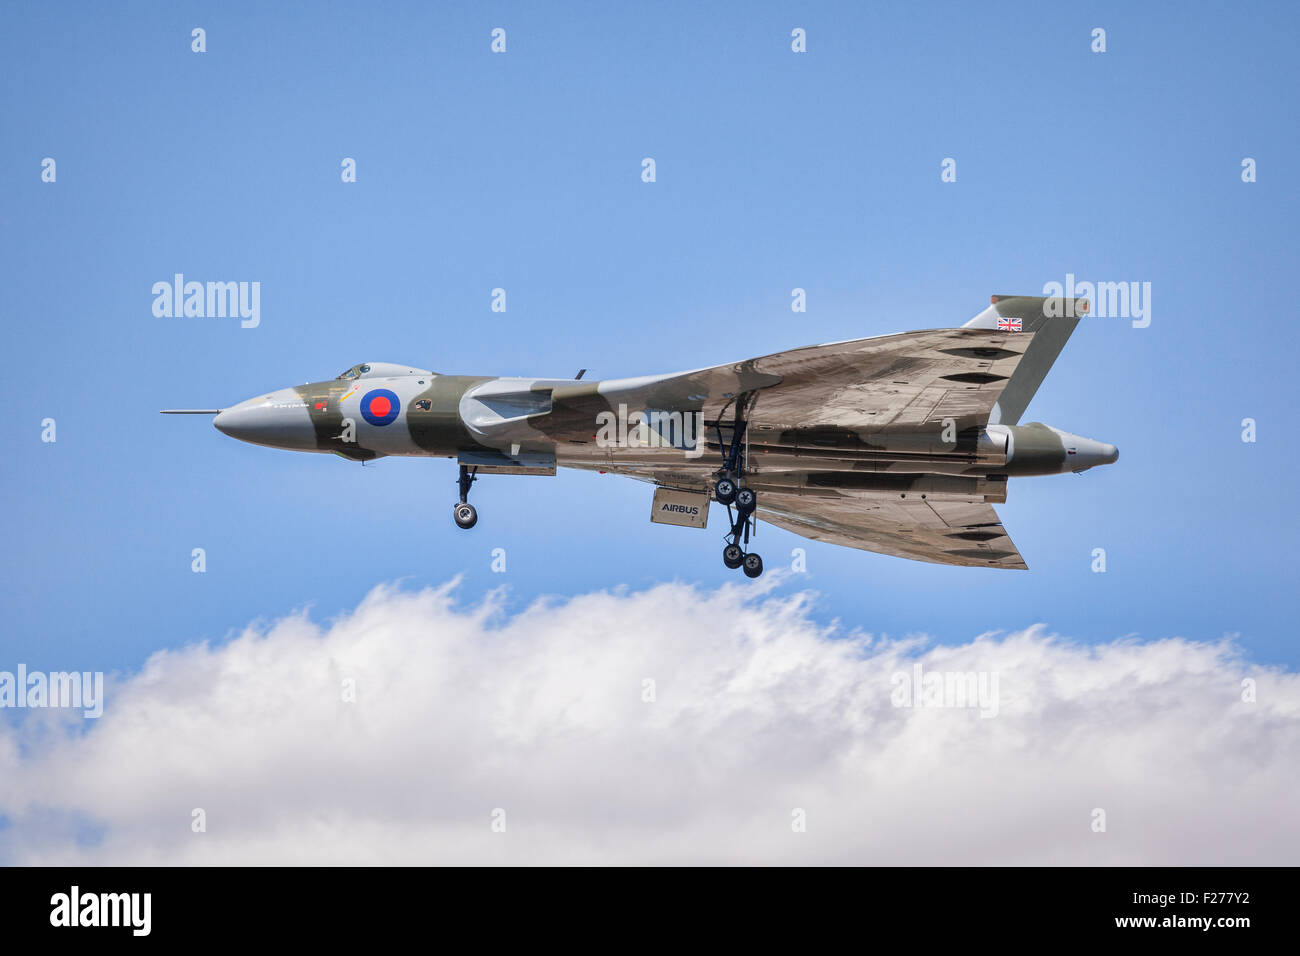 L'ultimo battenti Avro Vulcan B2 aerei bombardieri fa un passa basso con landing gear down al RIAT 2015, a Fairford... Foto Stock